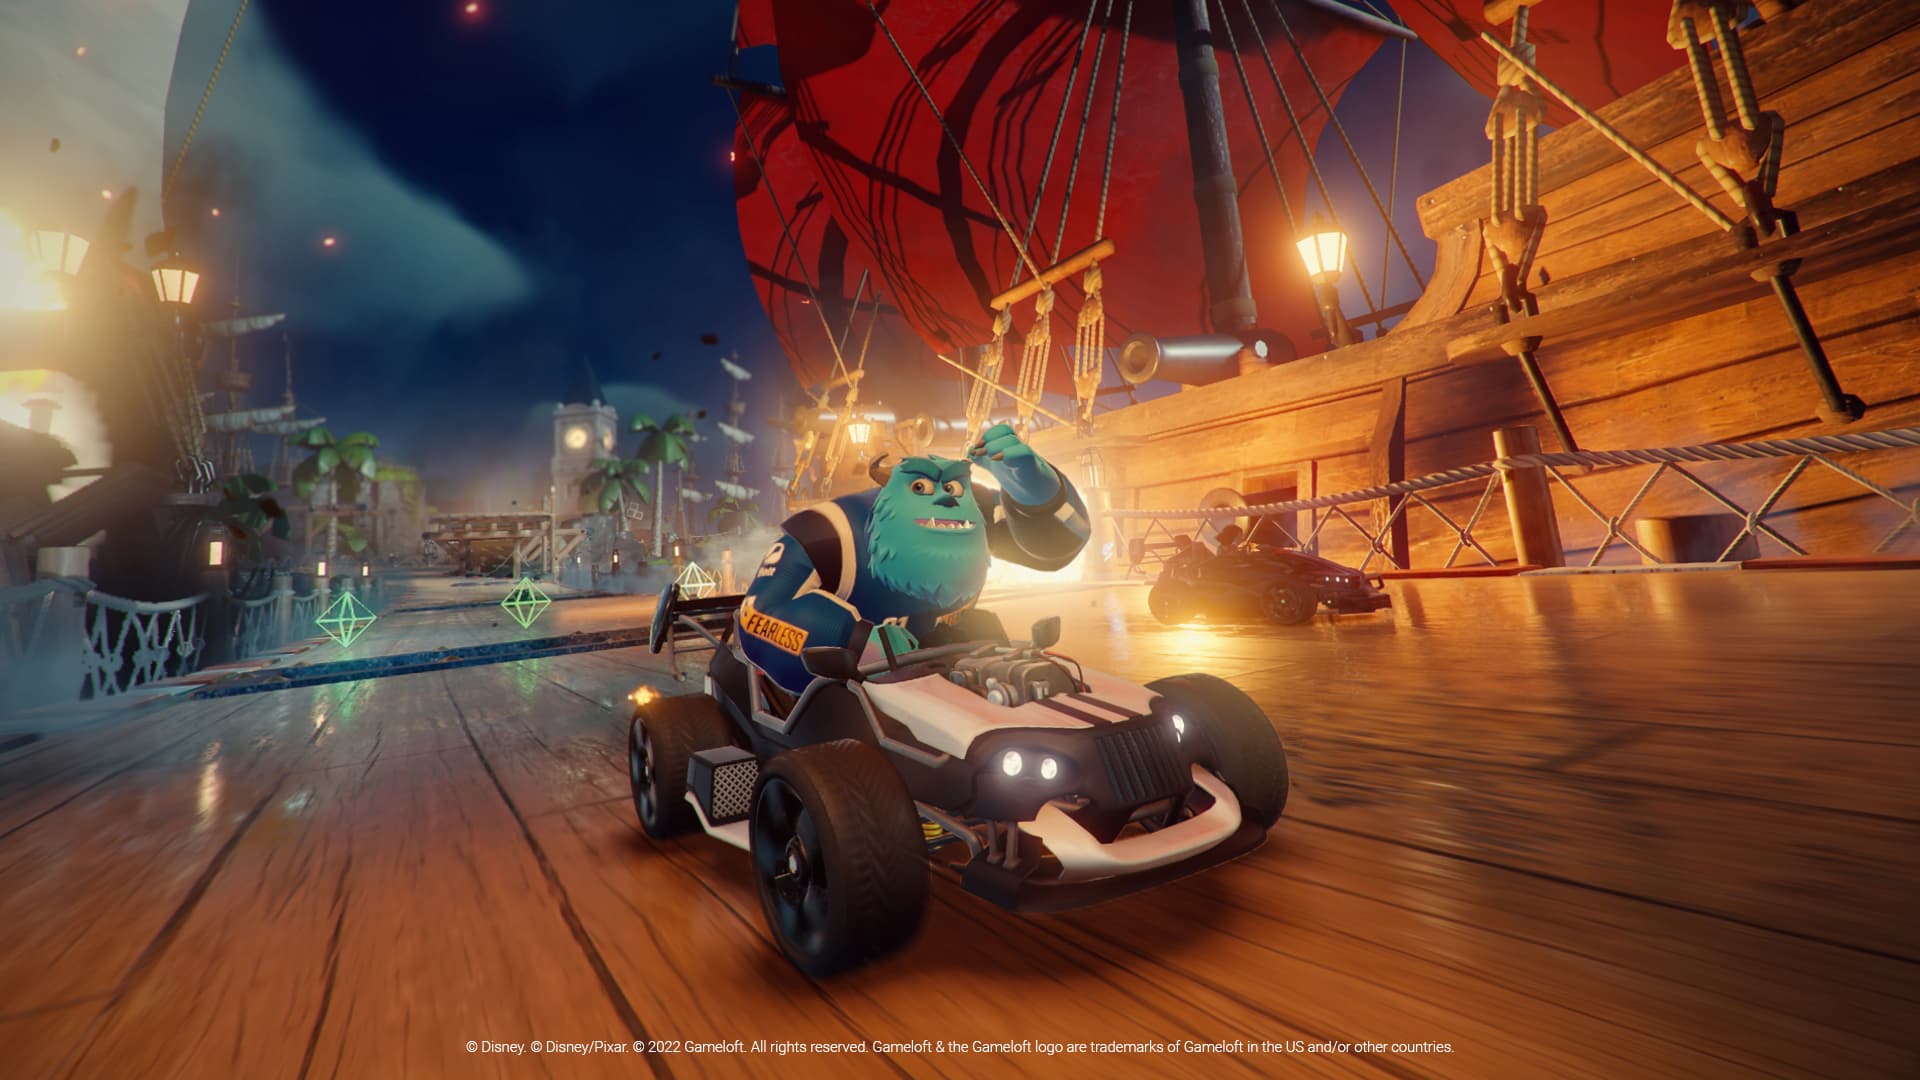 Disney Speedstorm (Multi) será lançado em 28 de setembro - GameBlast